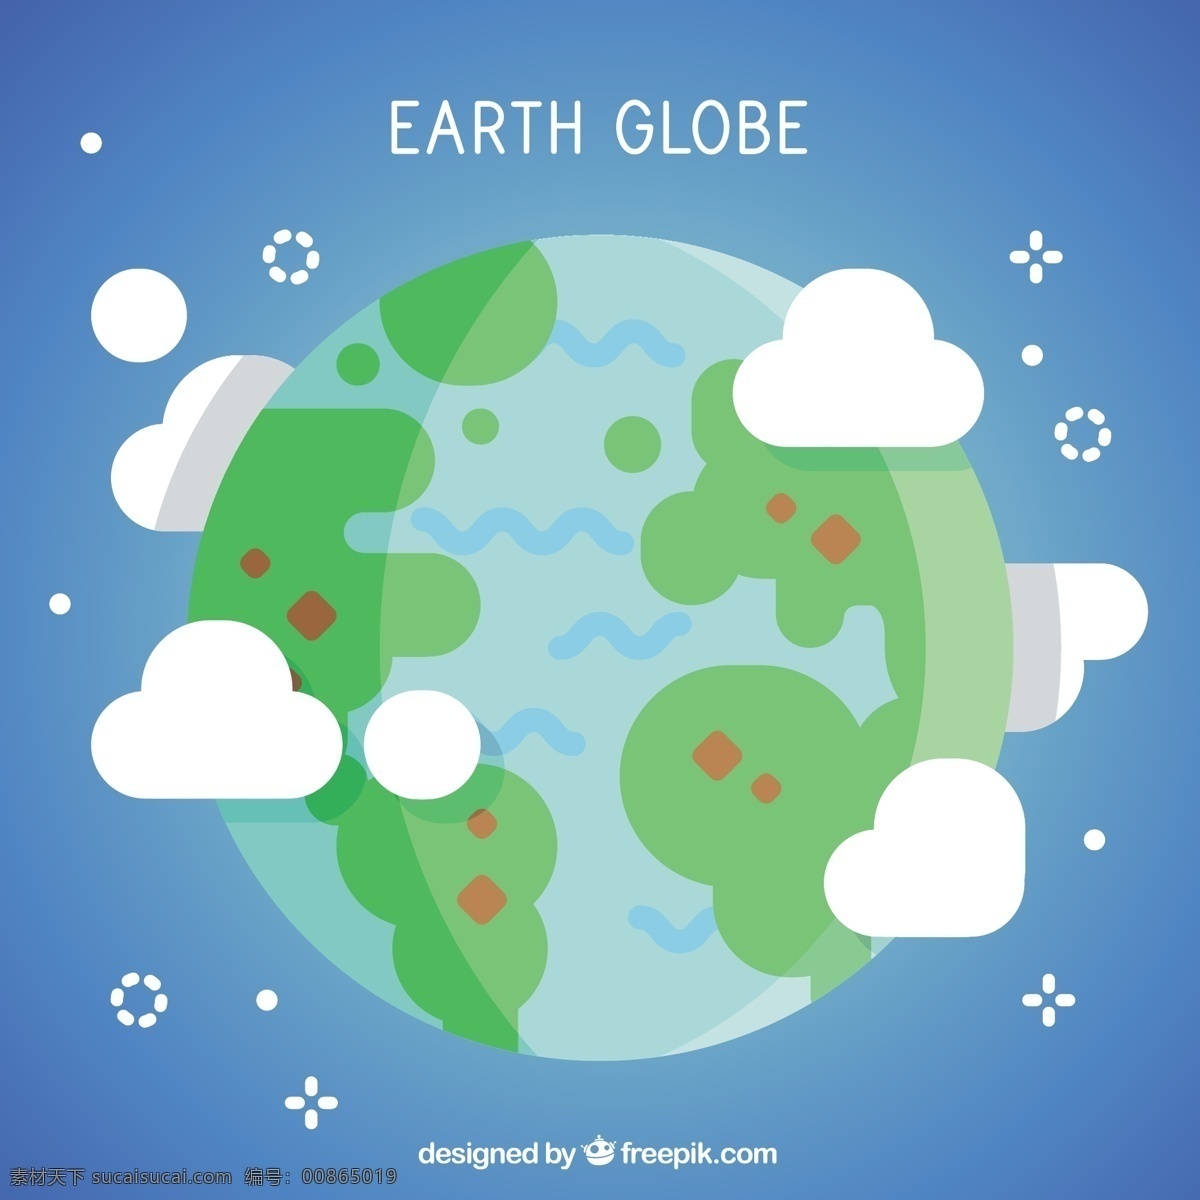 平面设计 中 地球 背景 地图 世界 世界地图 颜色 云彩 平坦 多彩的背景 行星 非洲 球体 欧洲 美国 世界地球仪 背景色 地球仪